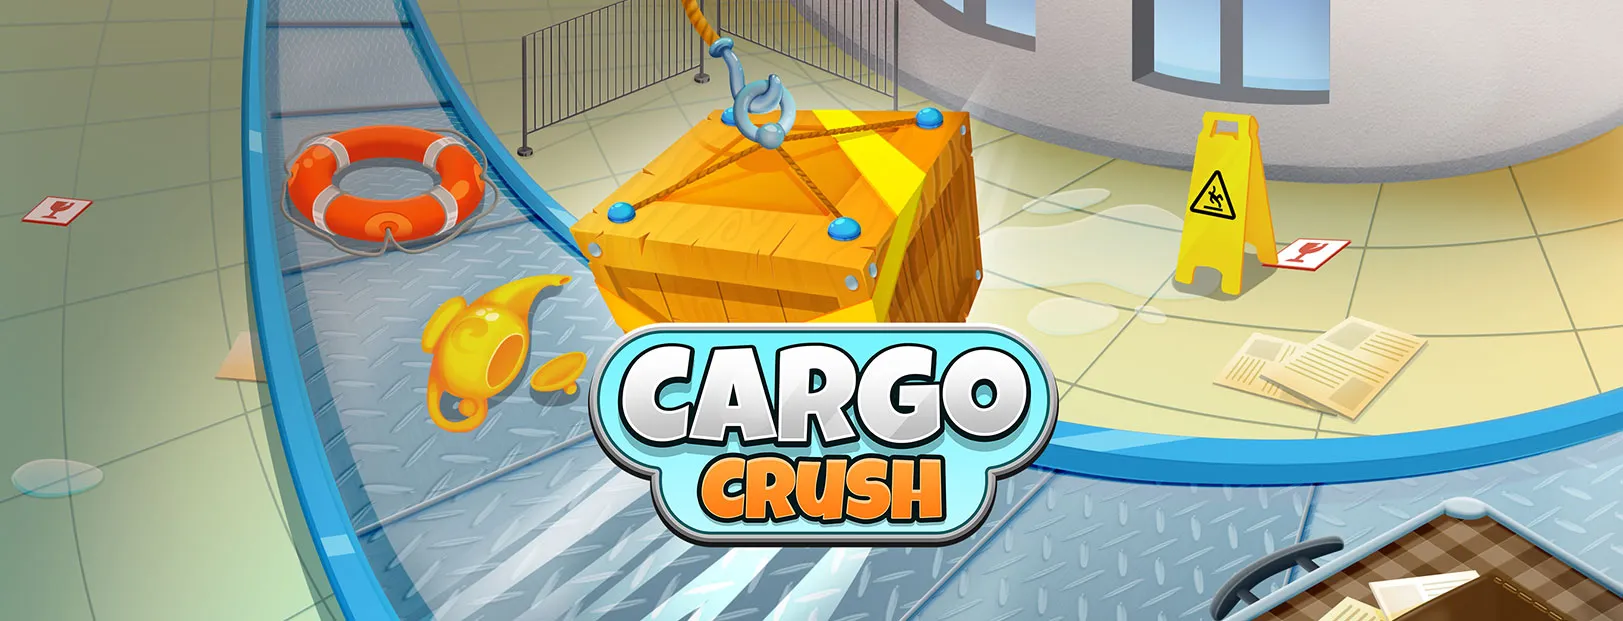 Cargo Crush: Airport Simulator